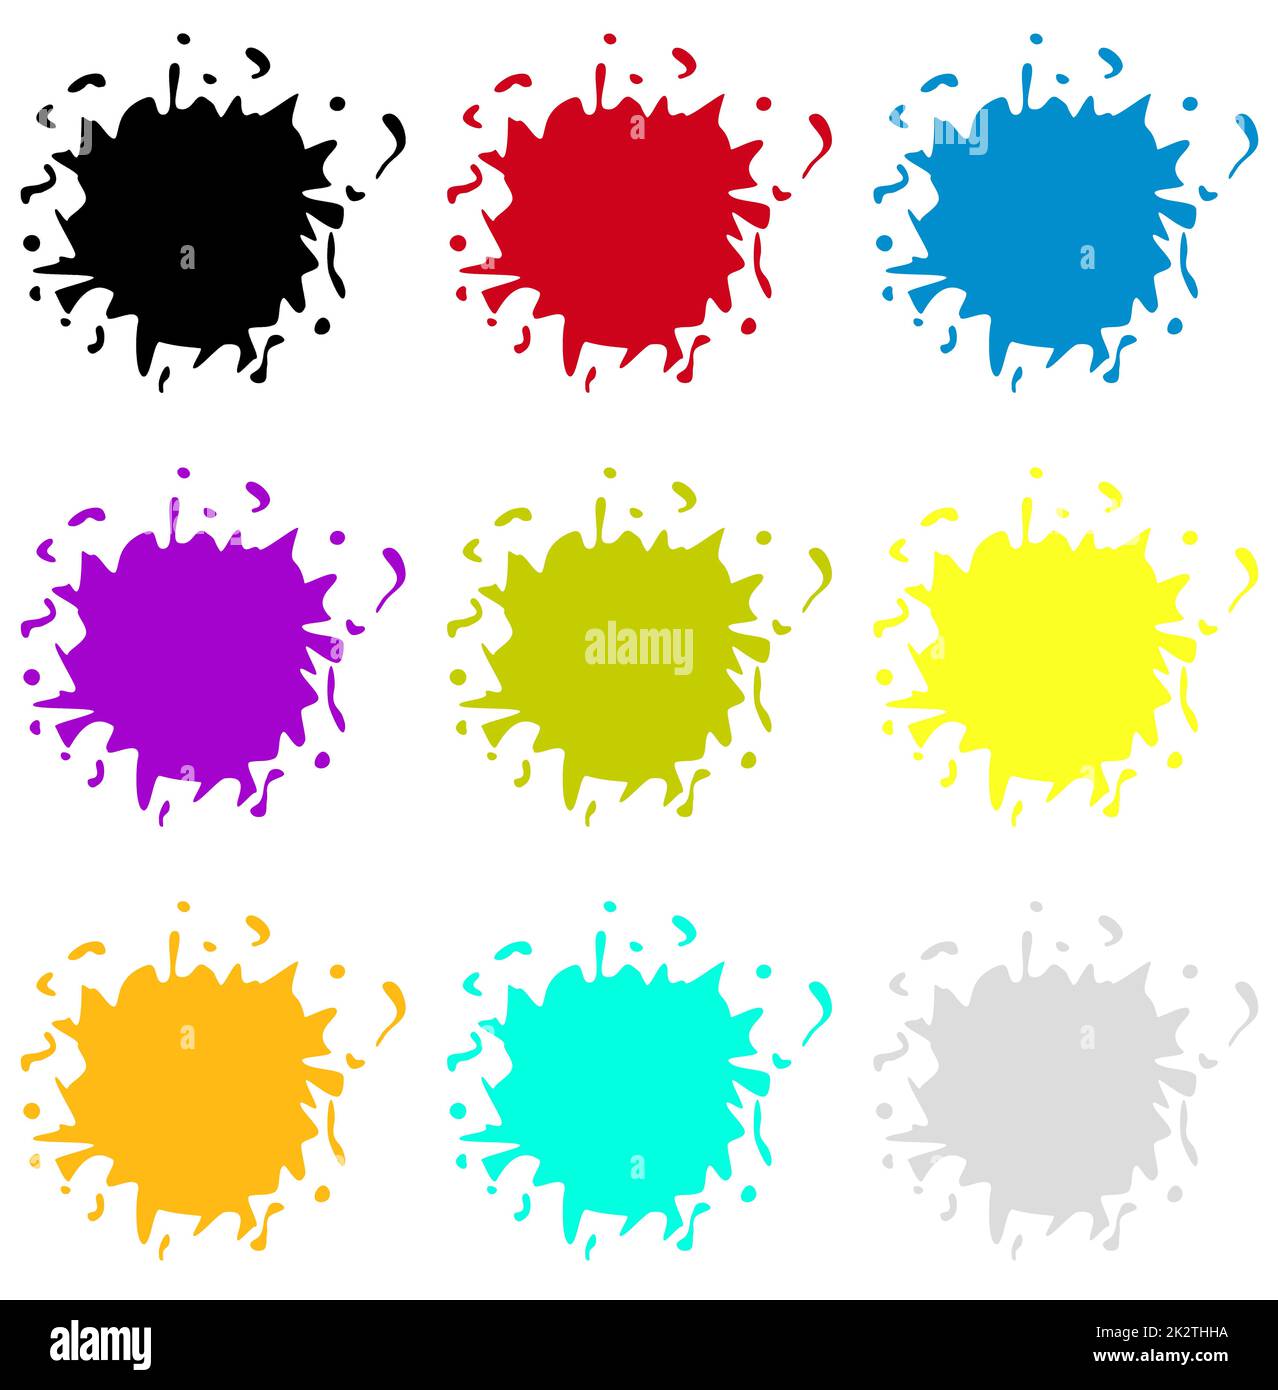 Kollektion mit 9 Aquarellblöcken in verschiedenen Farben Stockfoto